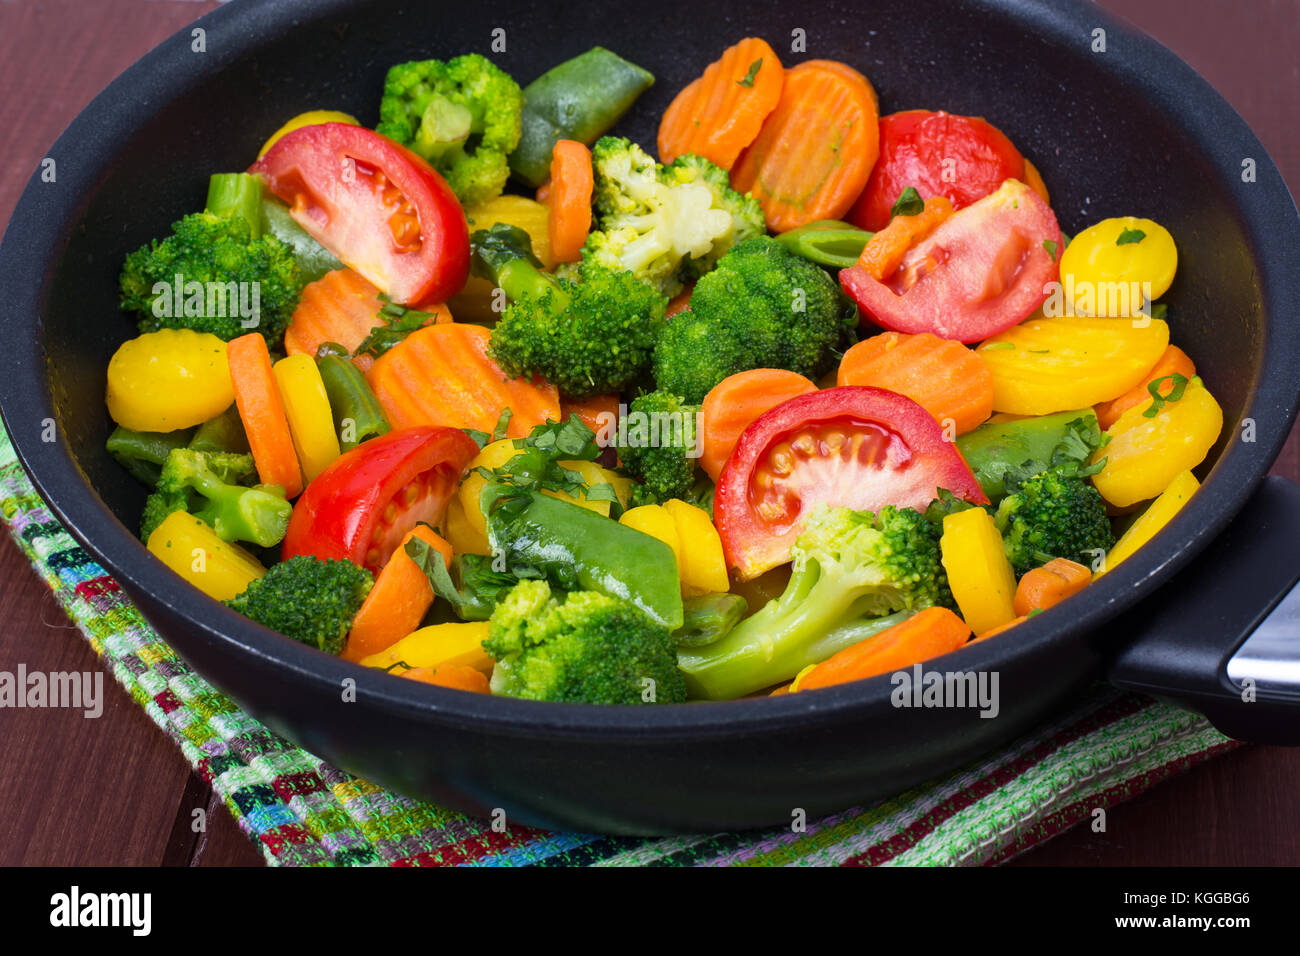 Karotten, Brokkoli, Tomaten in der Pfanne. vegetarisches Menü. studio Foto  Stockfotografie - Alamy